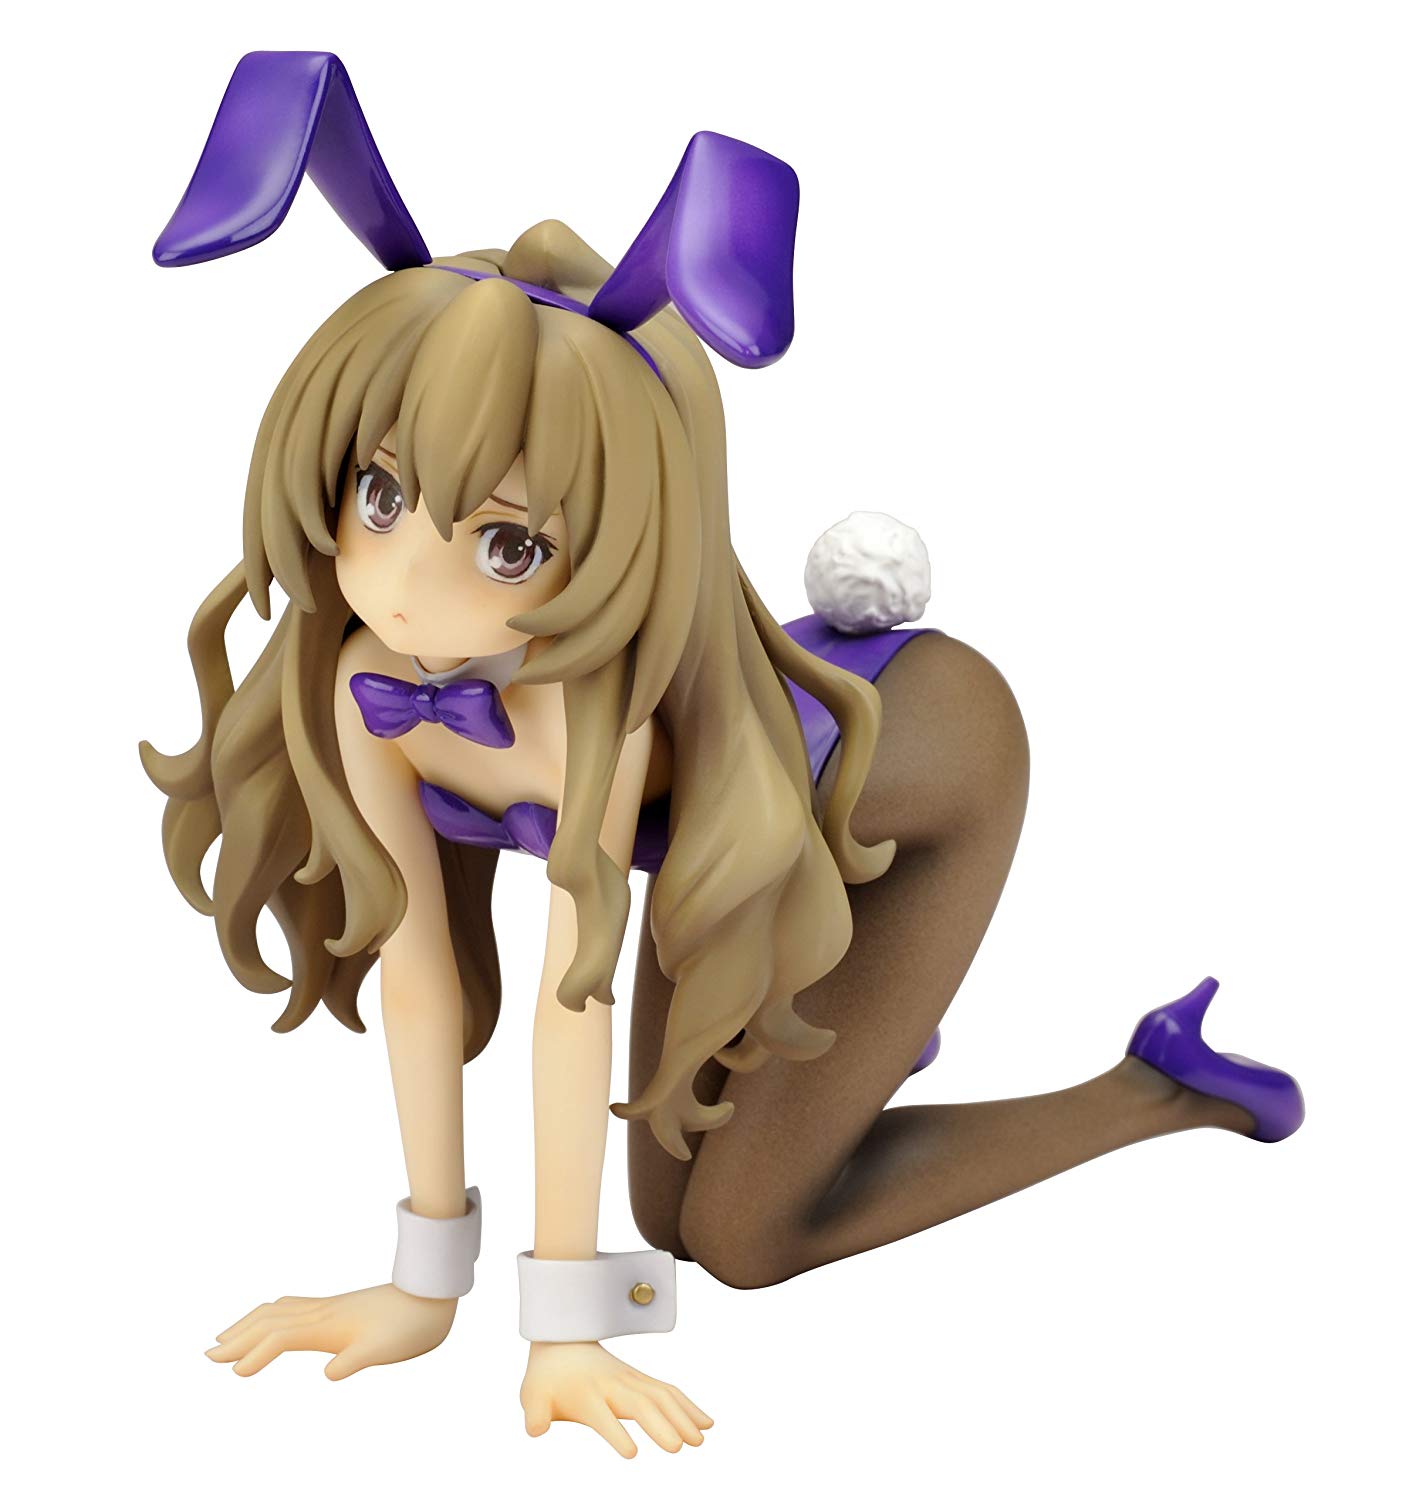 Taiga Aisaka PVC Figure 1/8 Scale, Bunny Girl Version, Toradora! , QuesQ